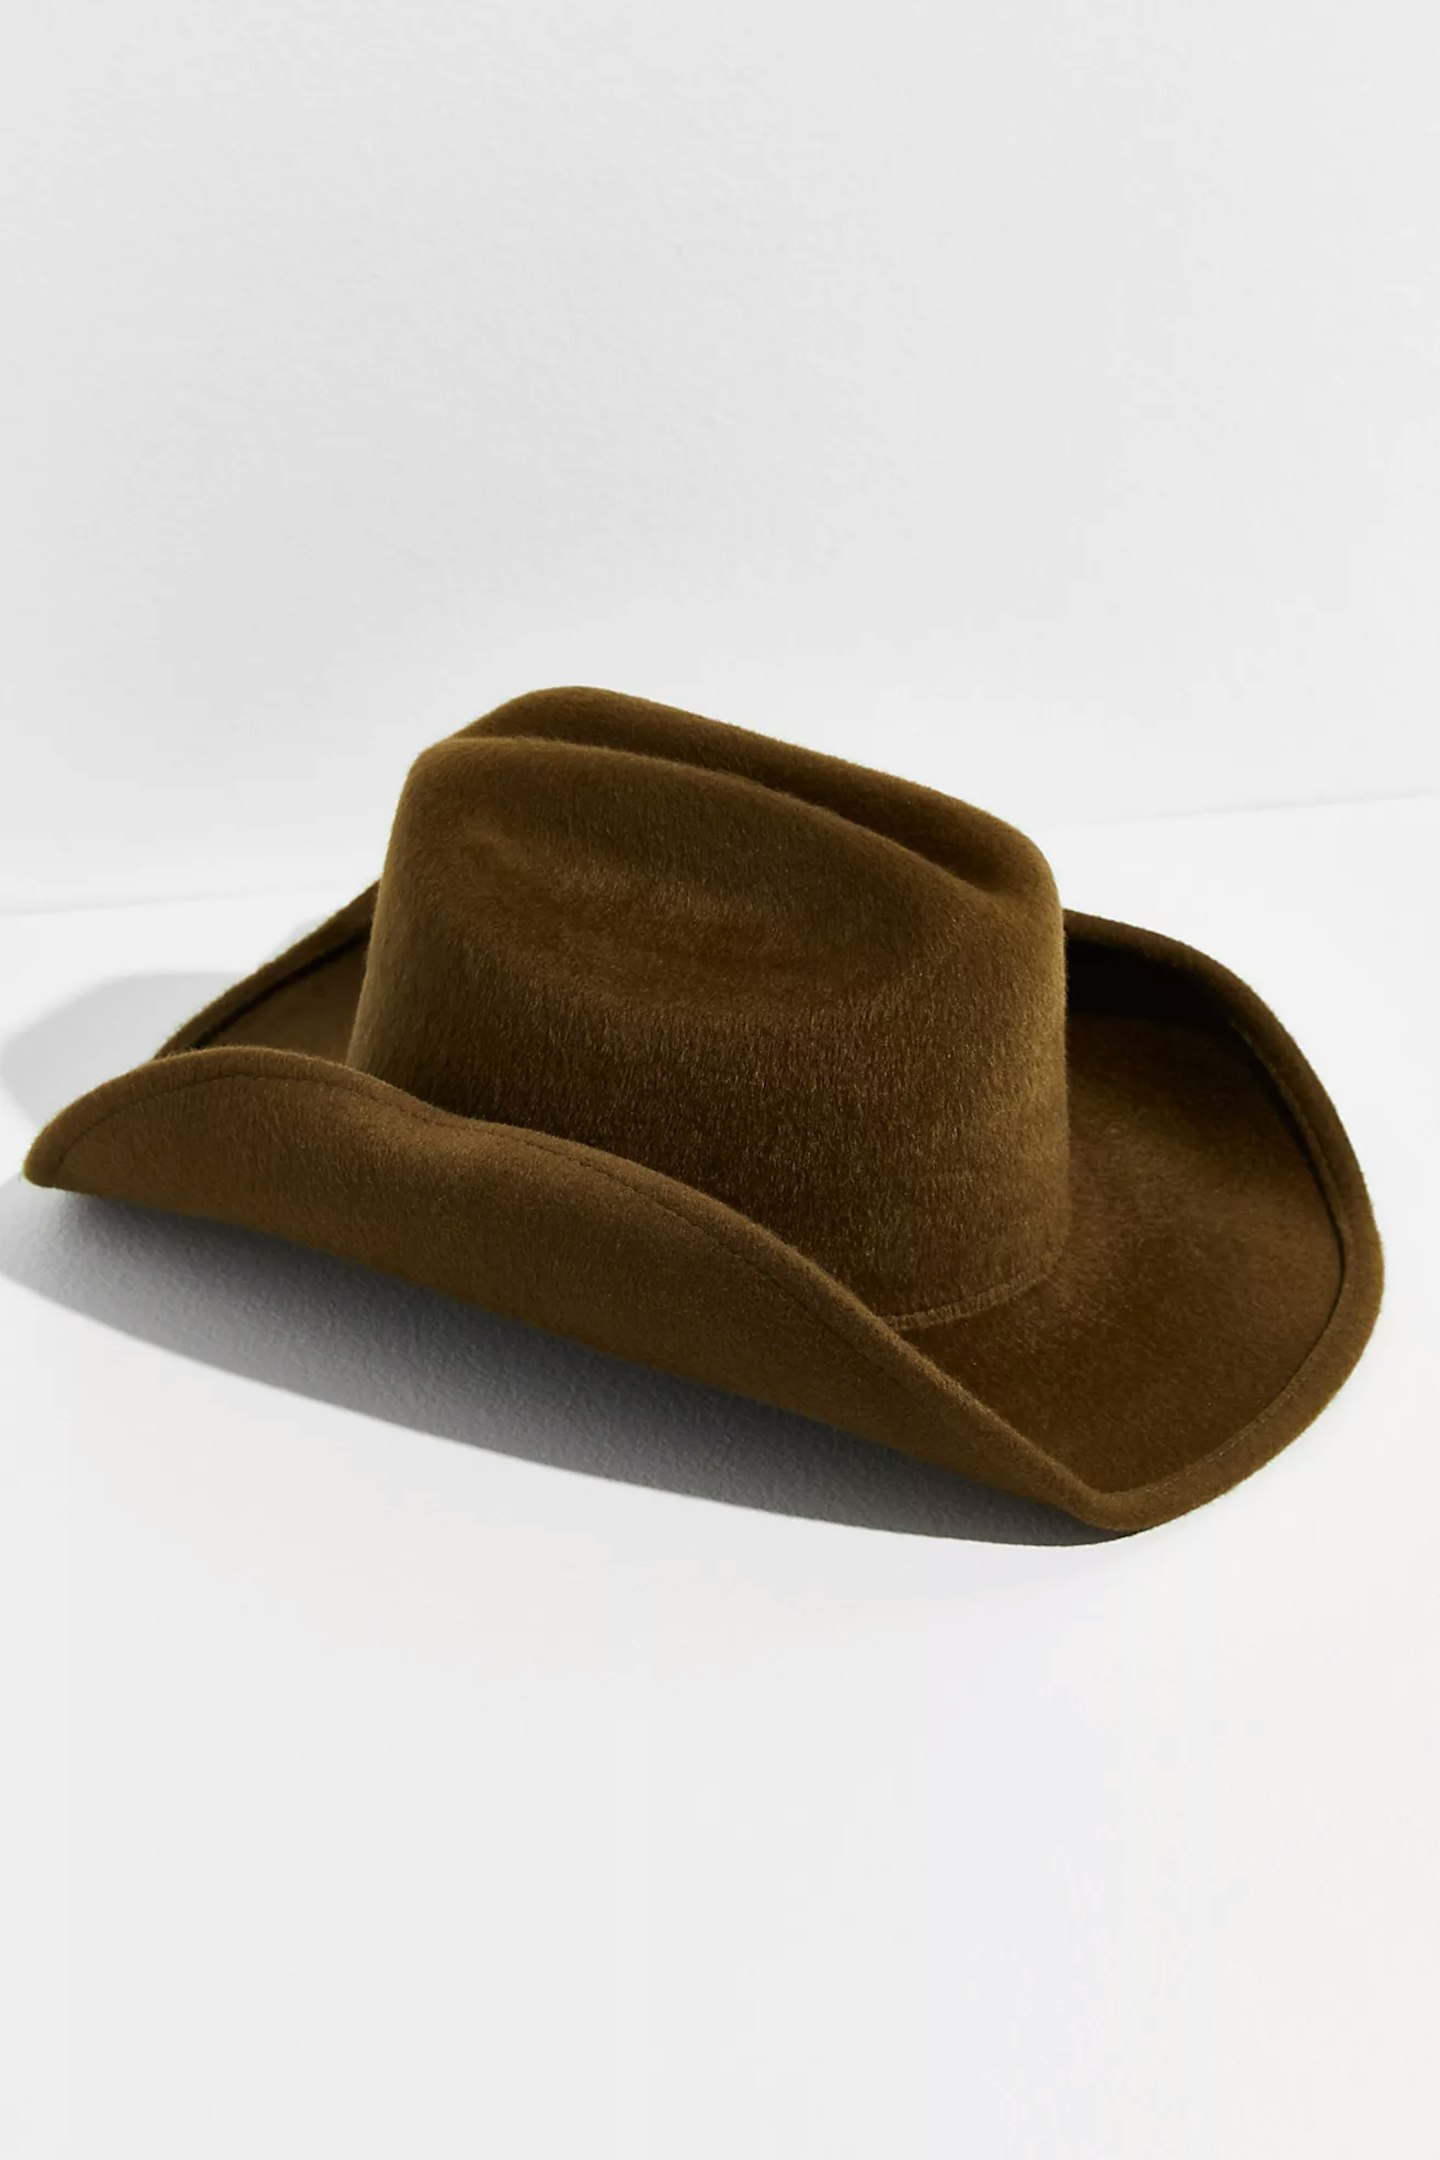 Wyeth, Cowboy Hat